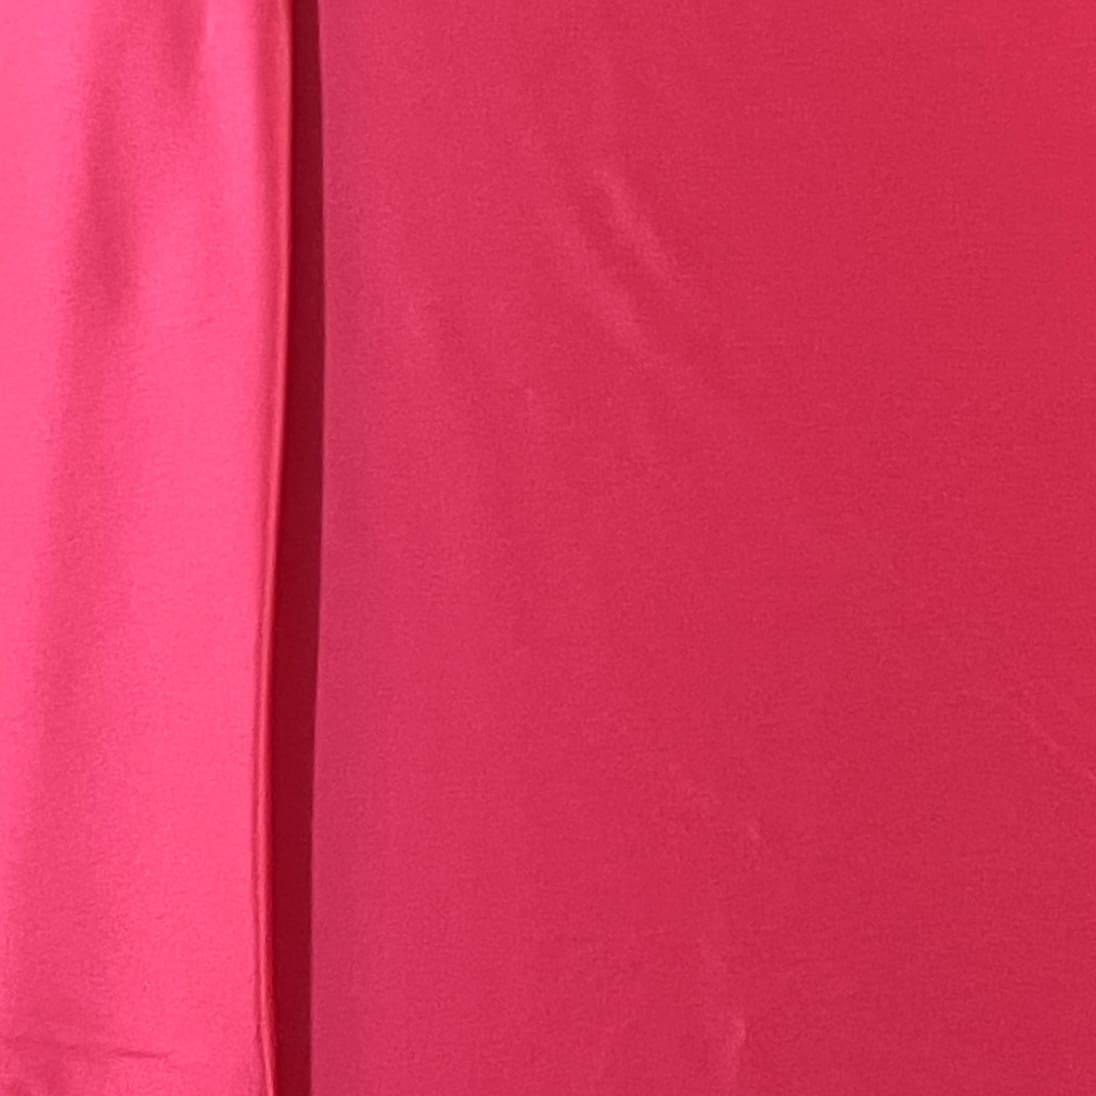 Premium Magenta Pink Solid Celina Satin Fabric